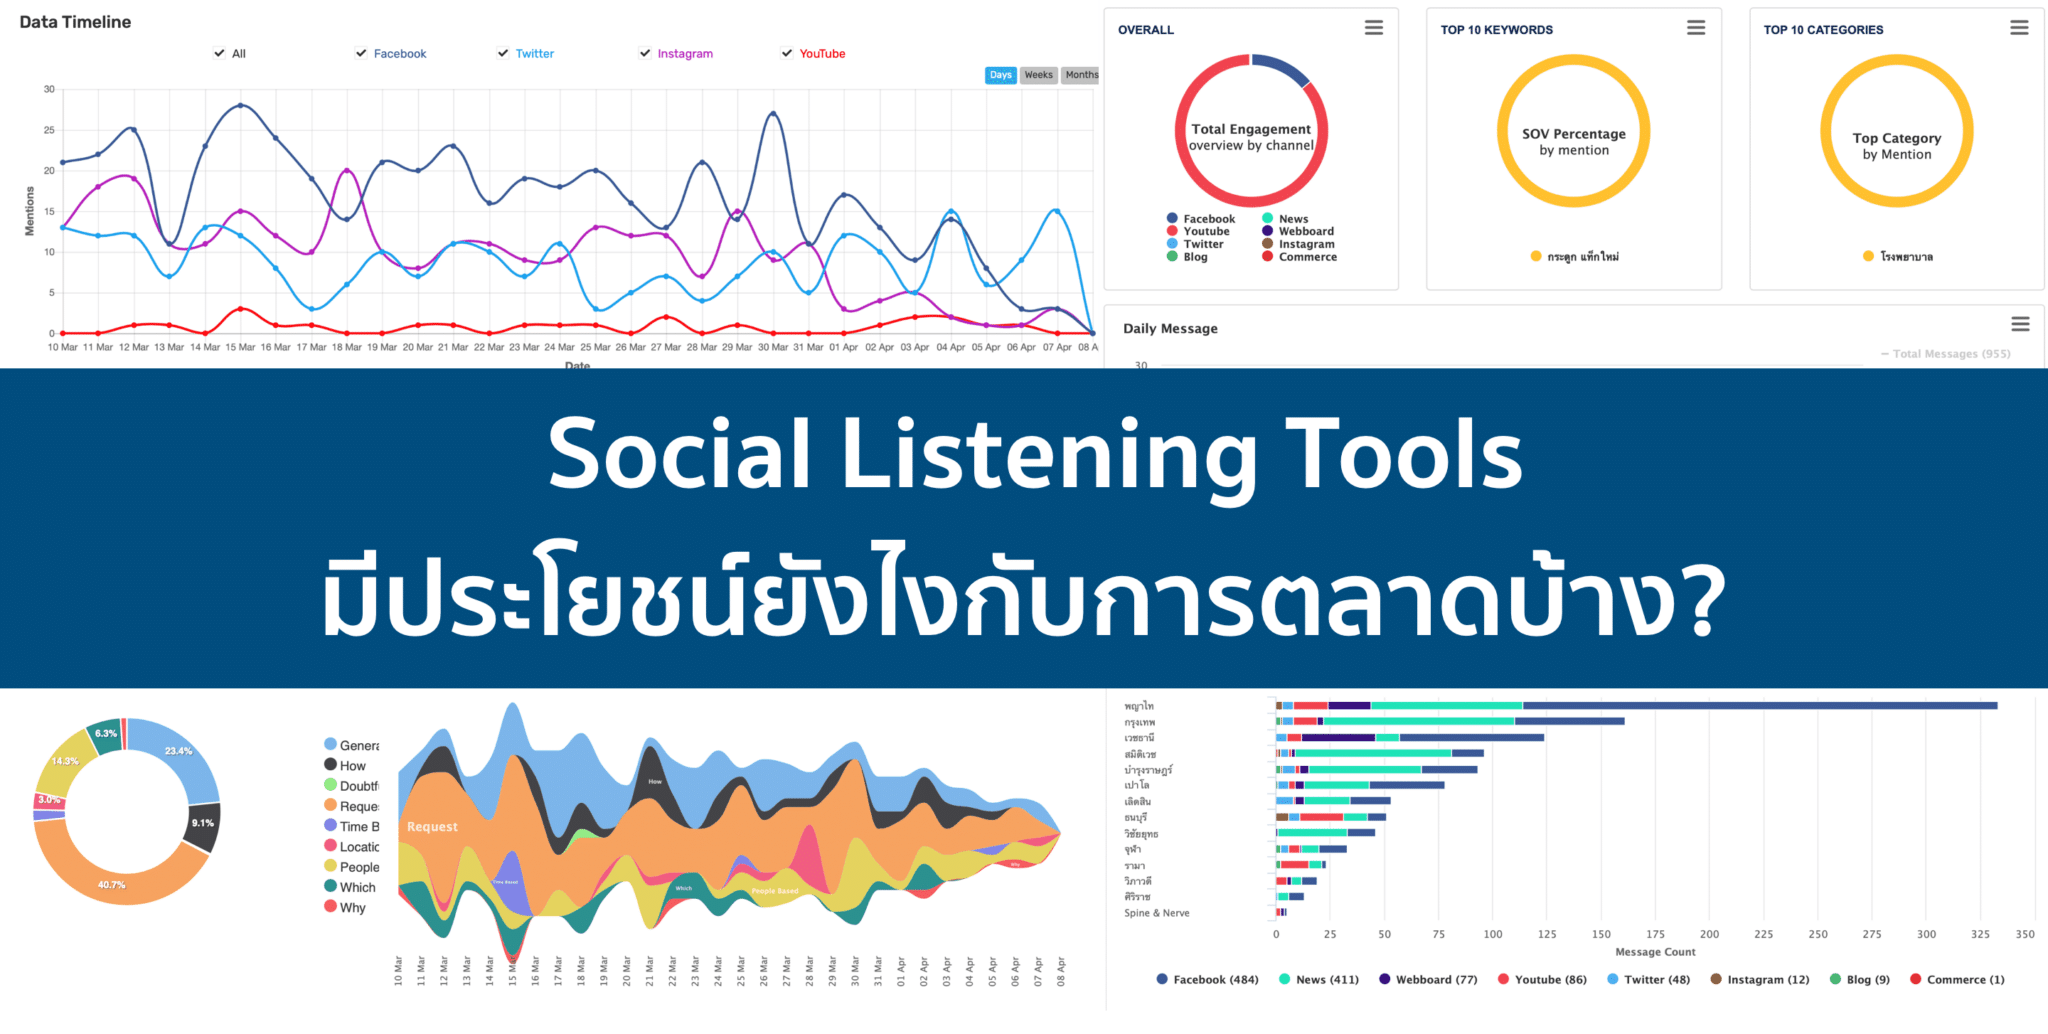 เครื่องมือ Social Listening Tools มีประโยชน์ยังไงในการทำการตลาด?